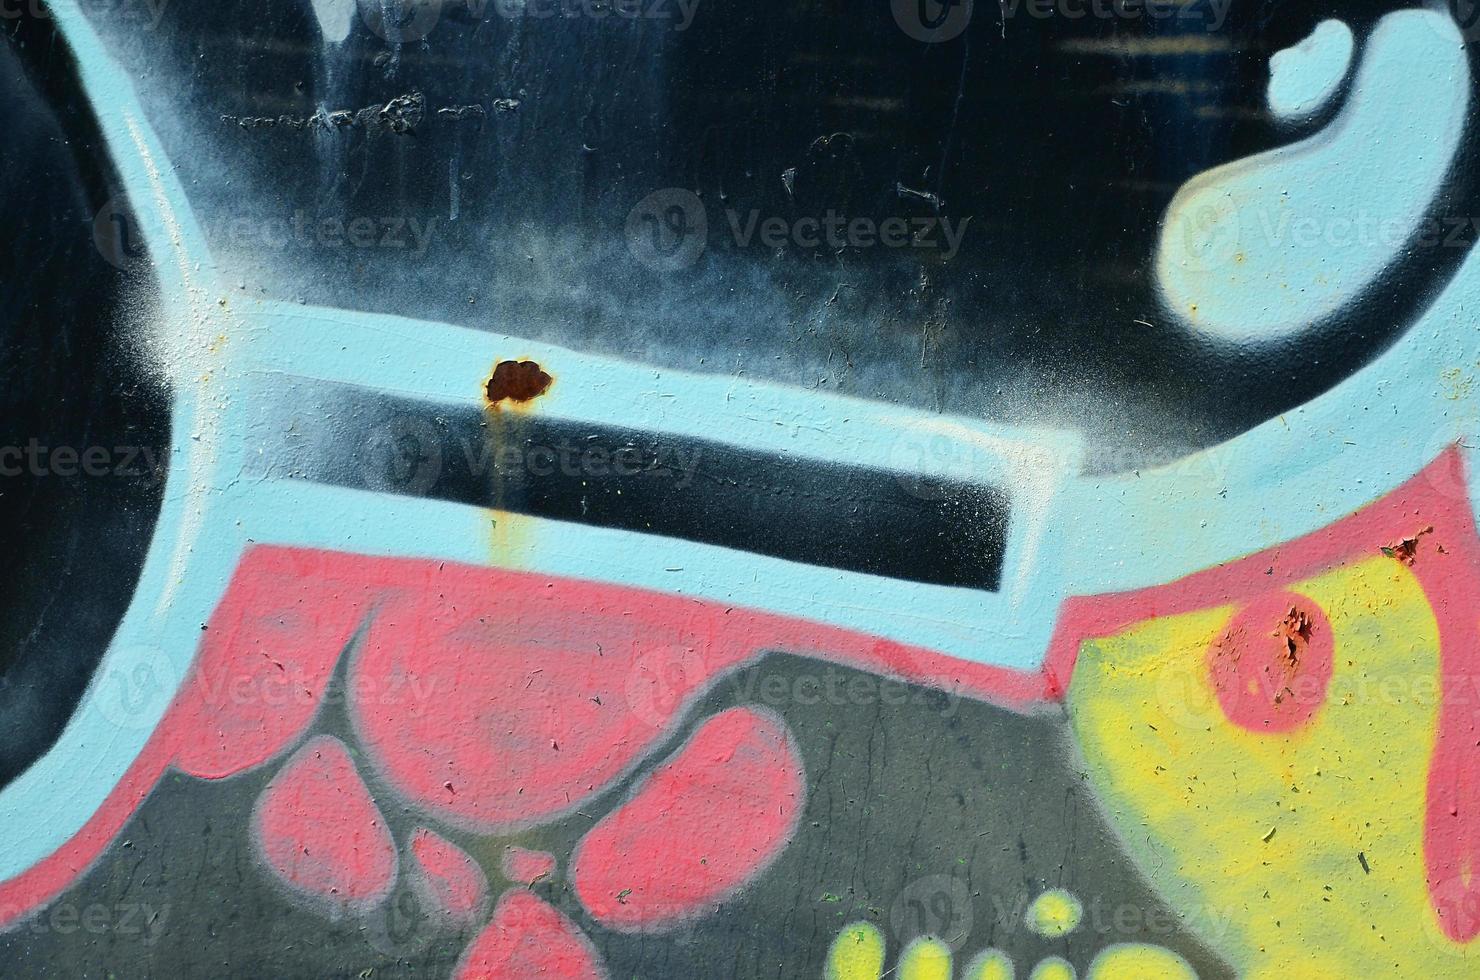 die alte Mauer, gemalt in Graffiti-Farbzeichnung mit Aerosolfarben. Hintergrundbild zum Thema Zeichnen von Graffiti und Street Art foto